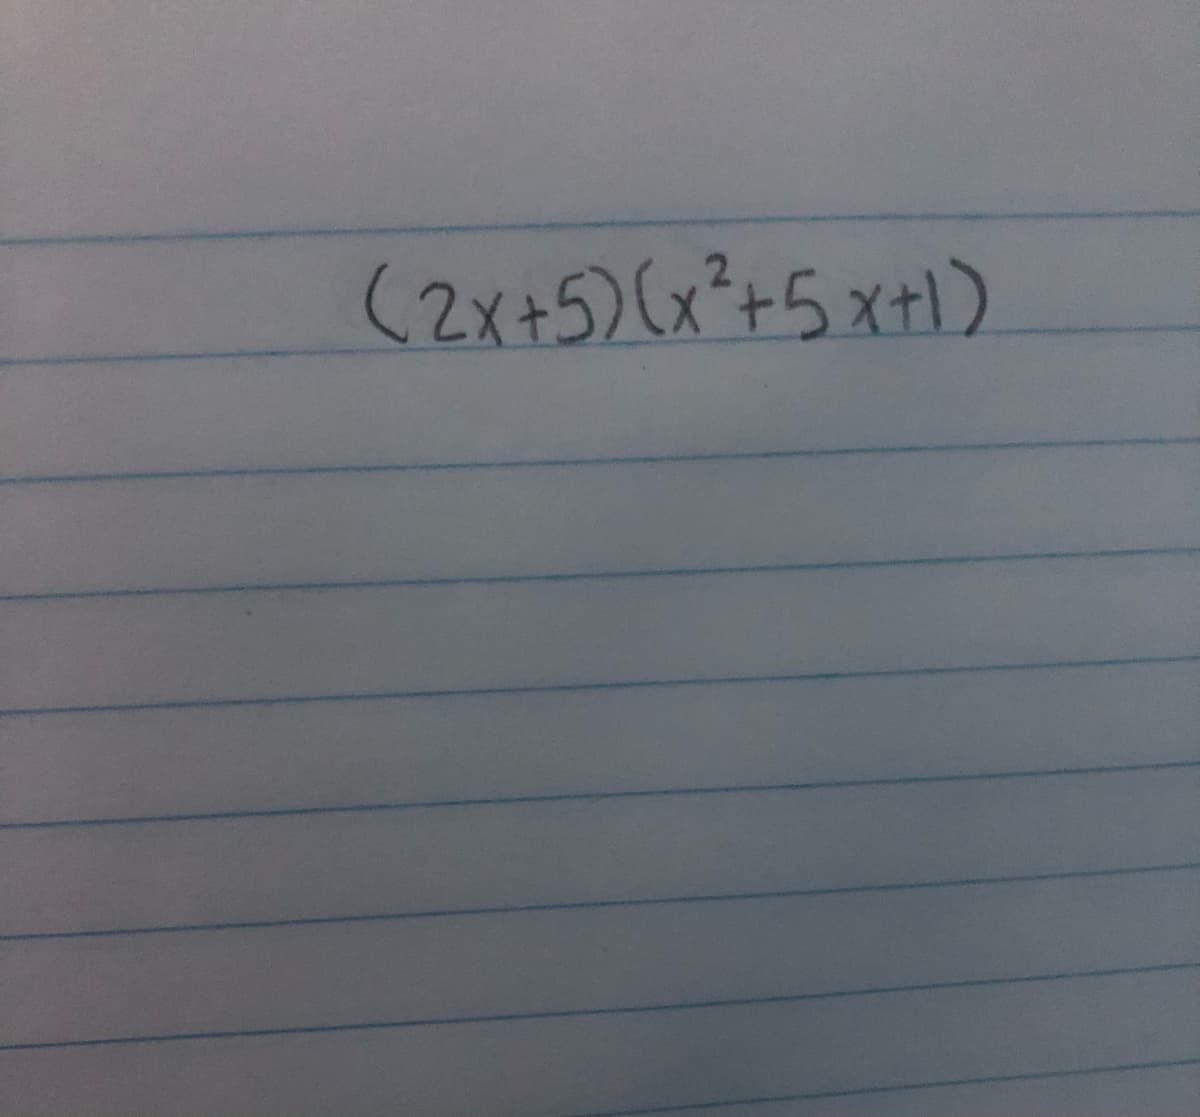 (2x+5)(x°+5x+1)
